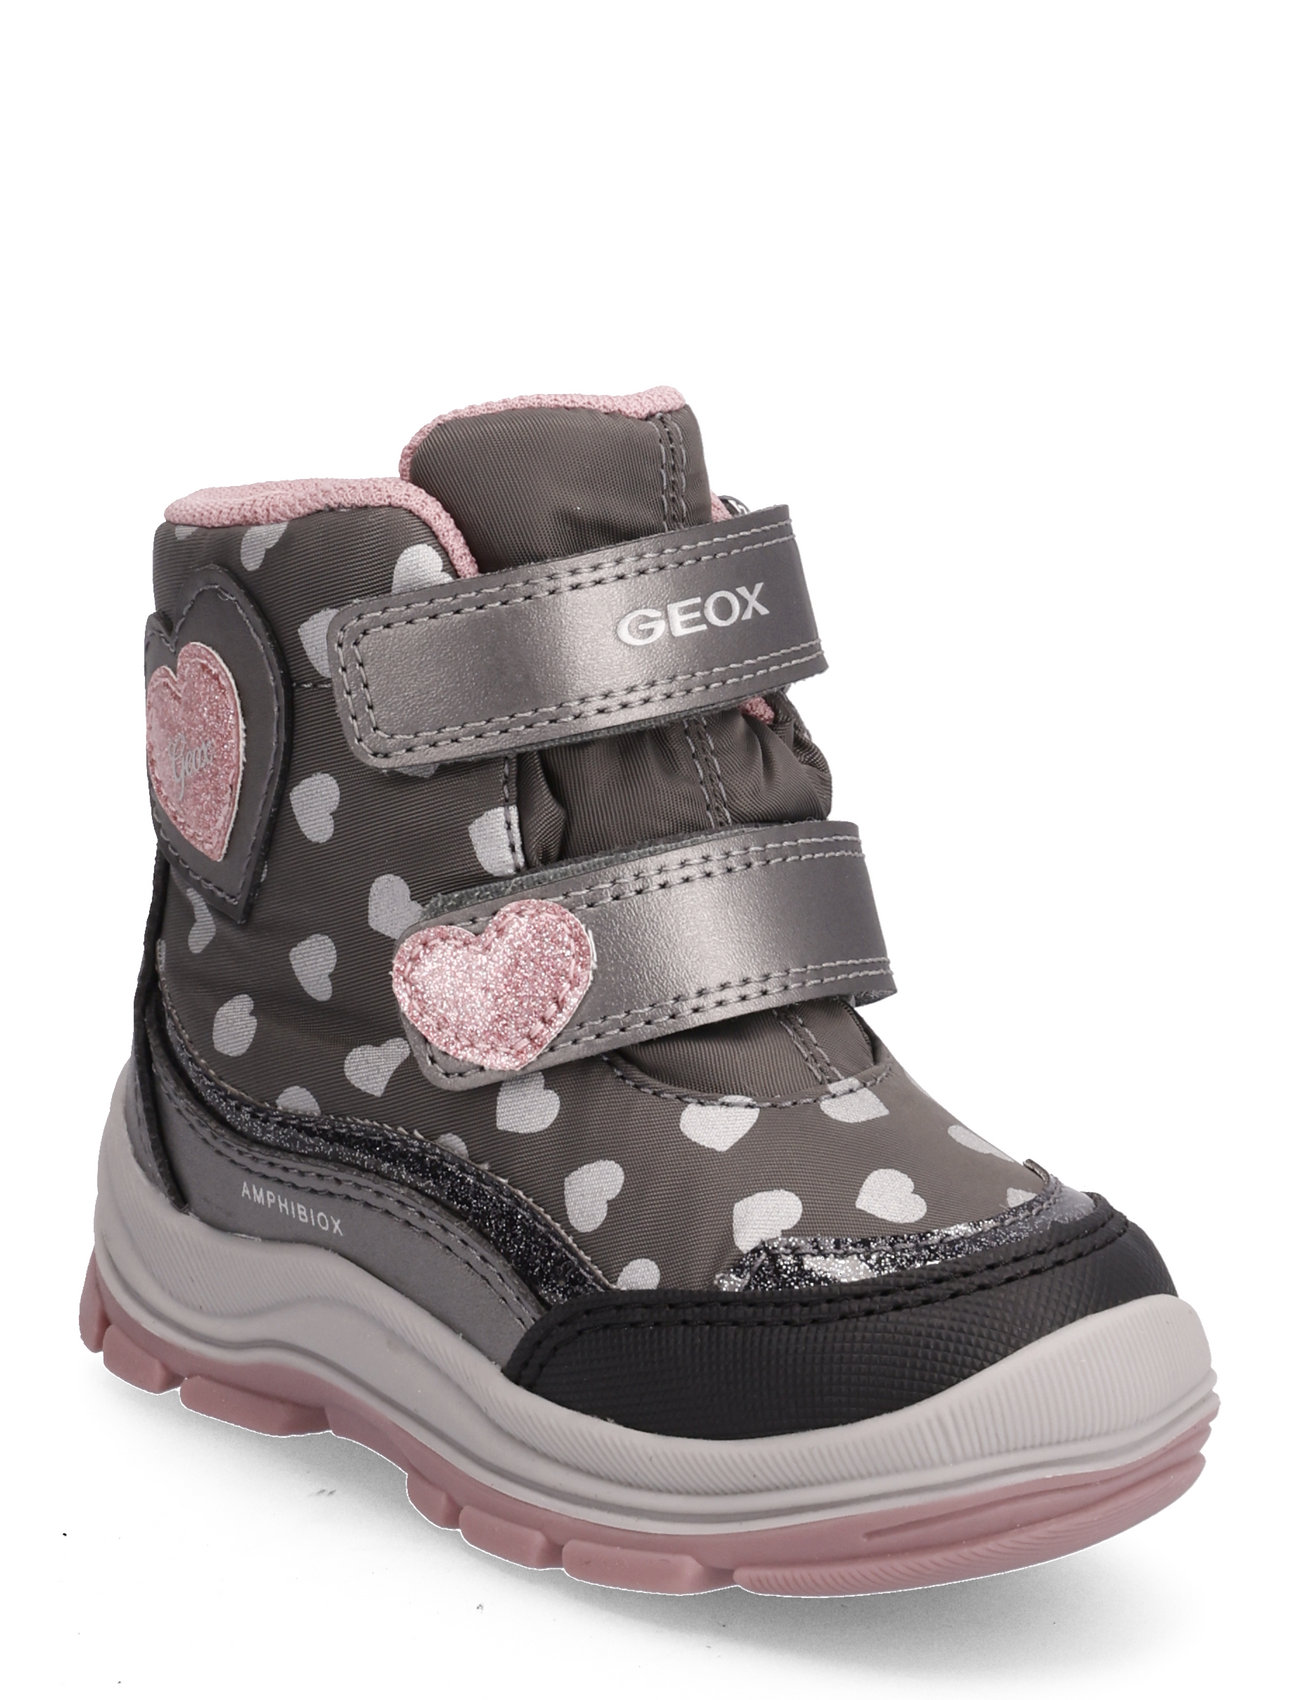 GEOX Flanfil B Abx (Grey/pink), 419.40 kr | Stort af designer mærker | Booztlet.com